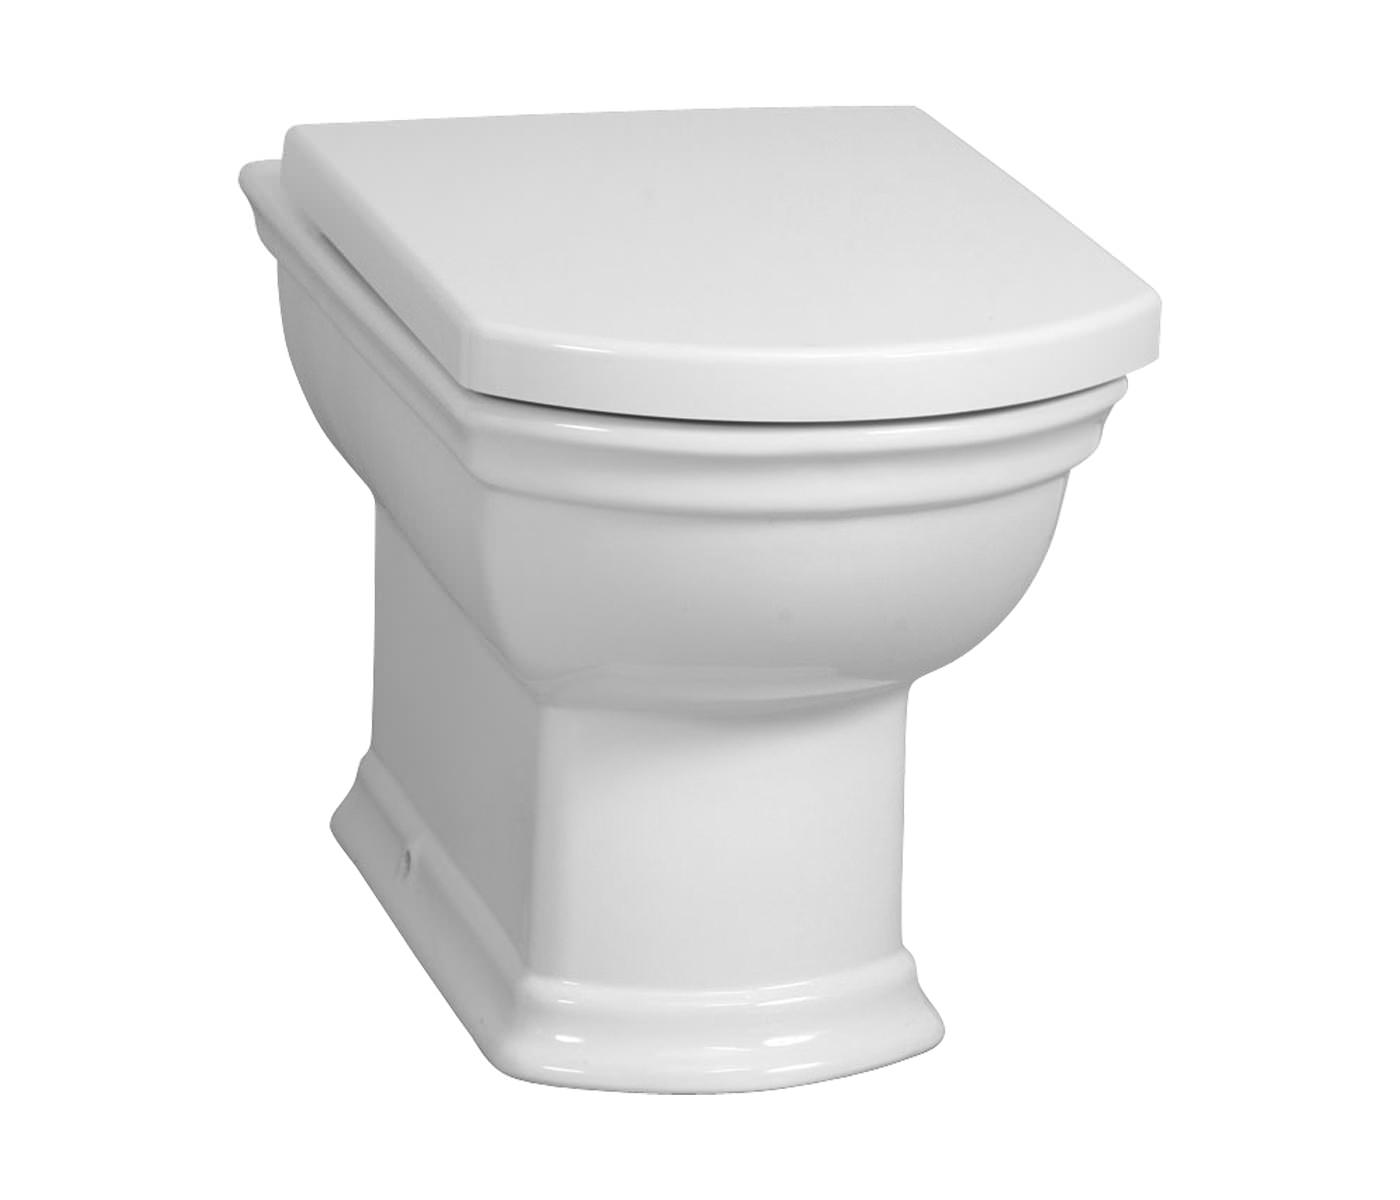 VitrA Serenada BackToWall WC Pan With Toilet Seat 4164B0030075